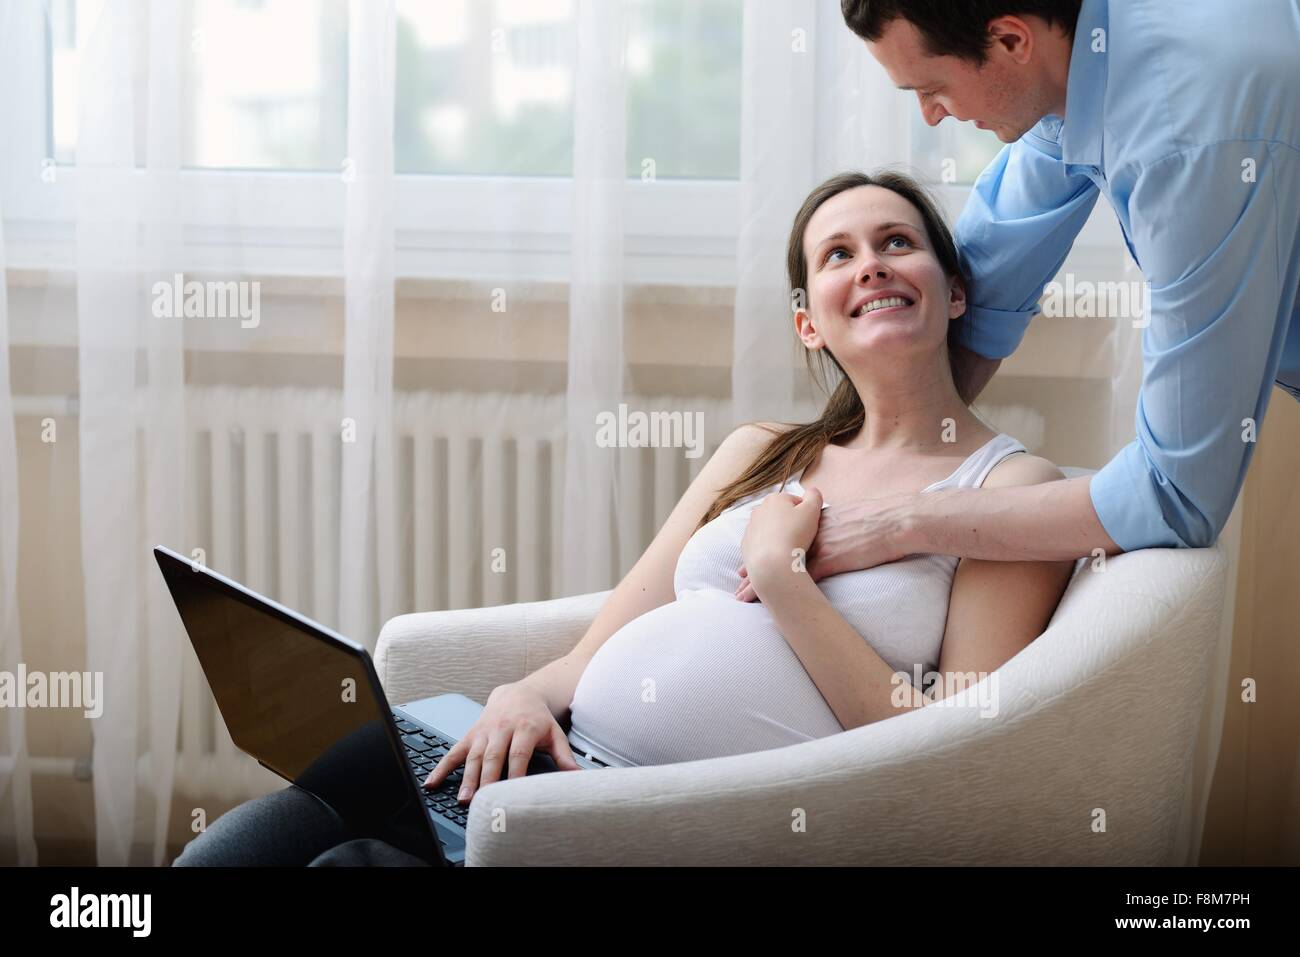 Schwangere Frau sitzen auf Stuhl, mit Laptop, Ehemann hielt ihre hand Stockfoto